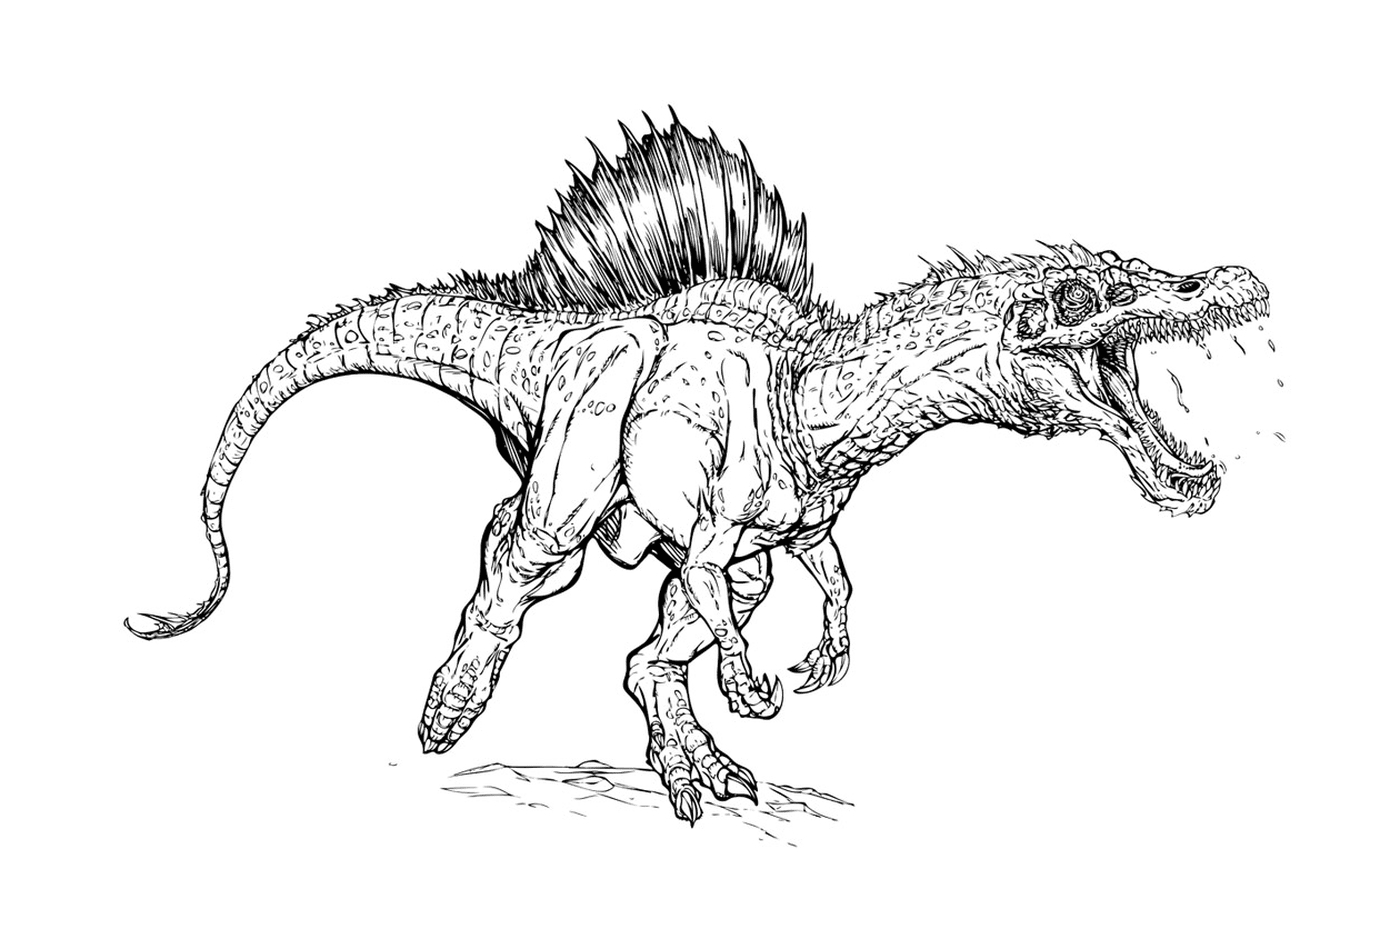  Violent and threatening Spinosaurus 